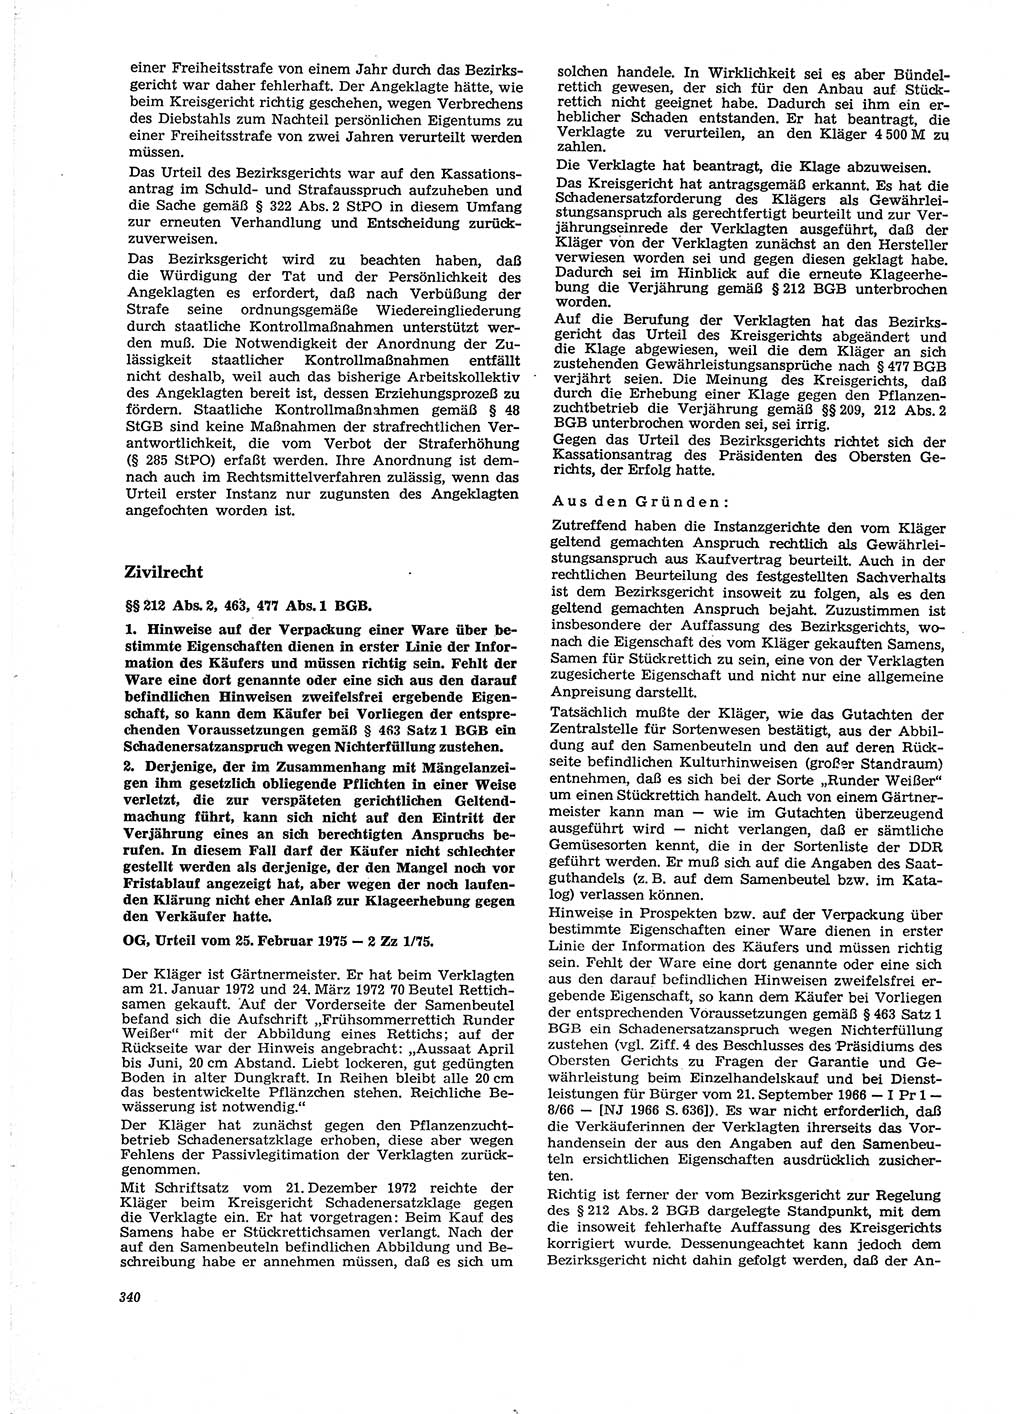 Neue Justiz (NJ), Zeitschrift für Recht und Rechtswissenschaft [Deutsche Demokratische Republik (DDR)], 29. Jahrgang 1975, Seite 340 (NJ DDR 1975, S. 340)